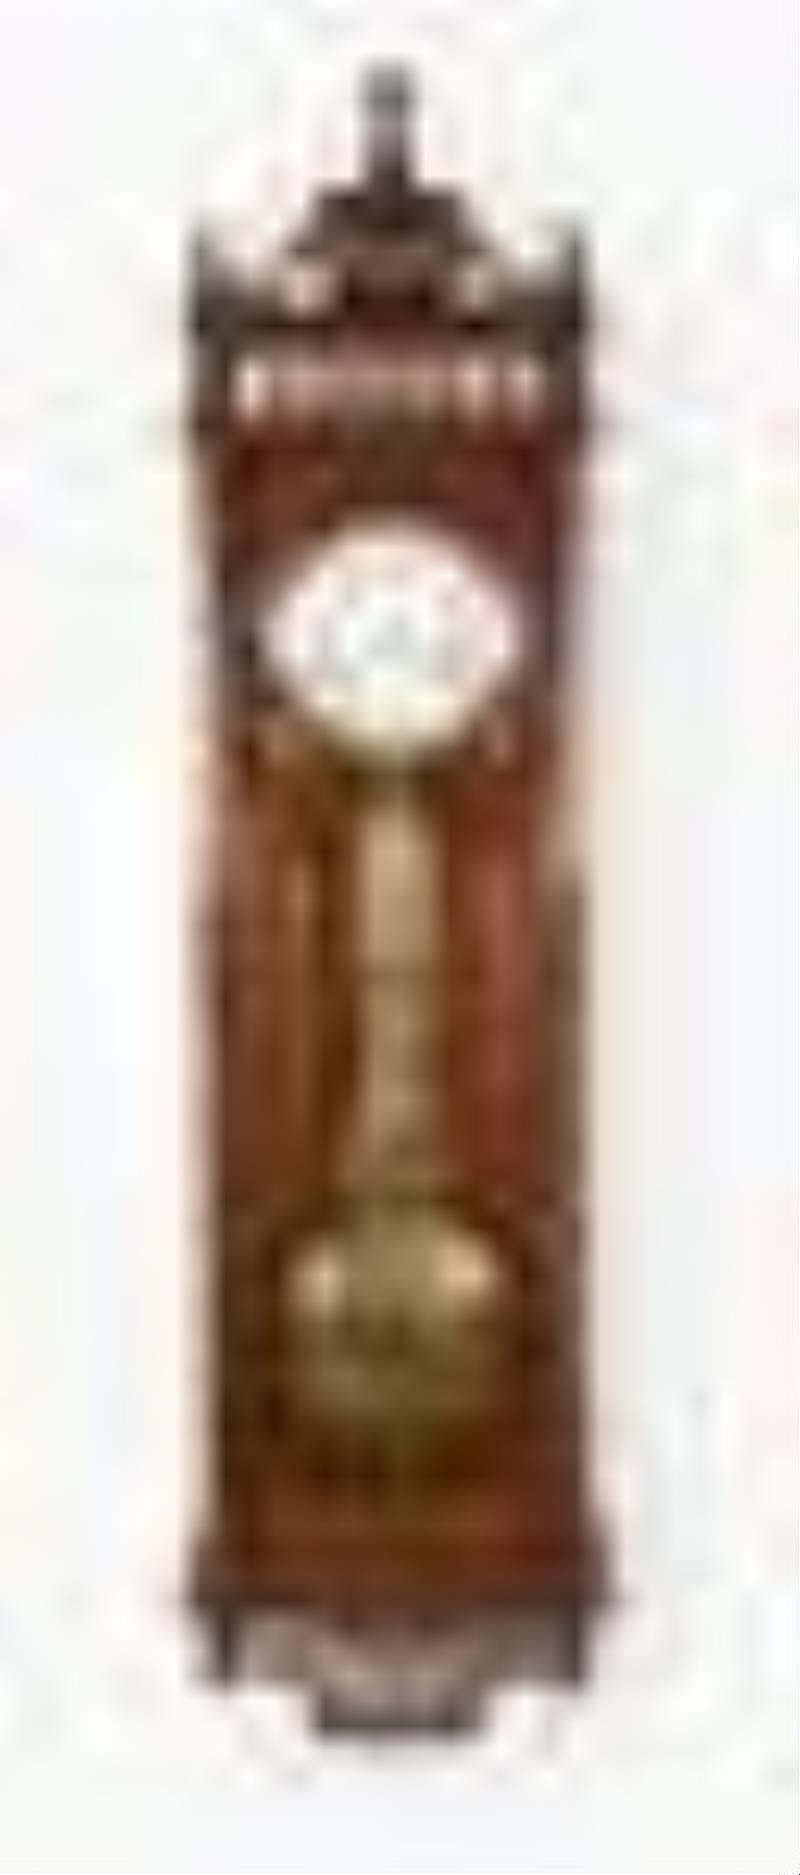 Ansonia Clock Co. Regulator No. 18 hanging jeweler's regulator